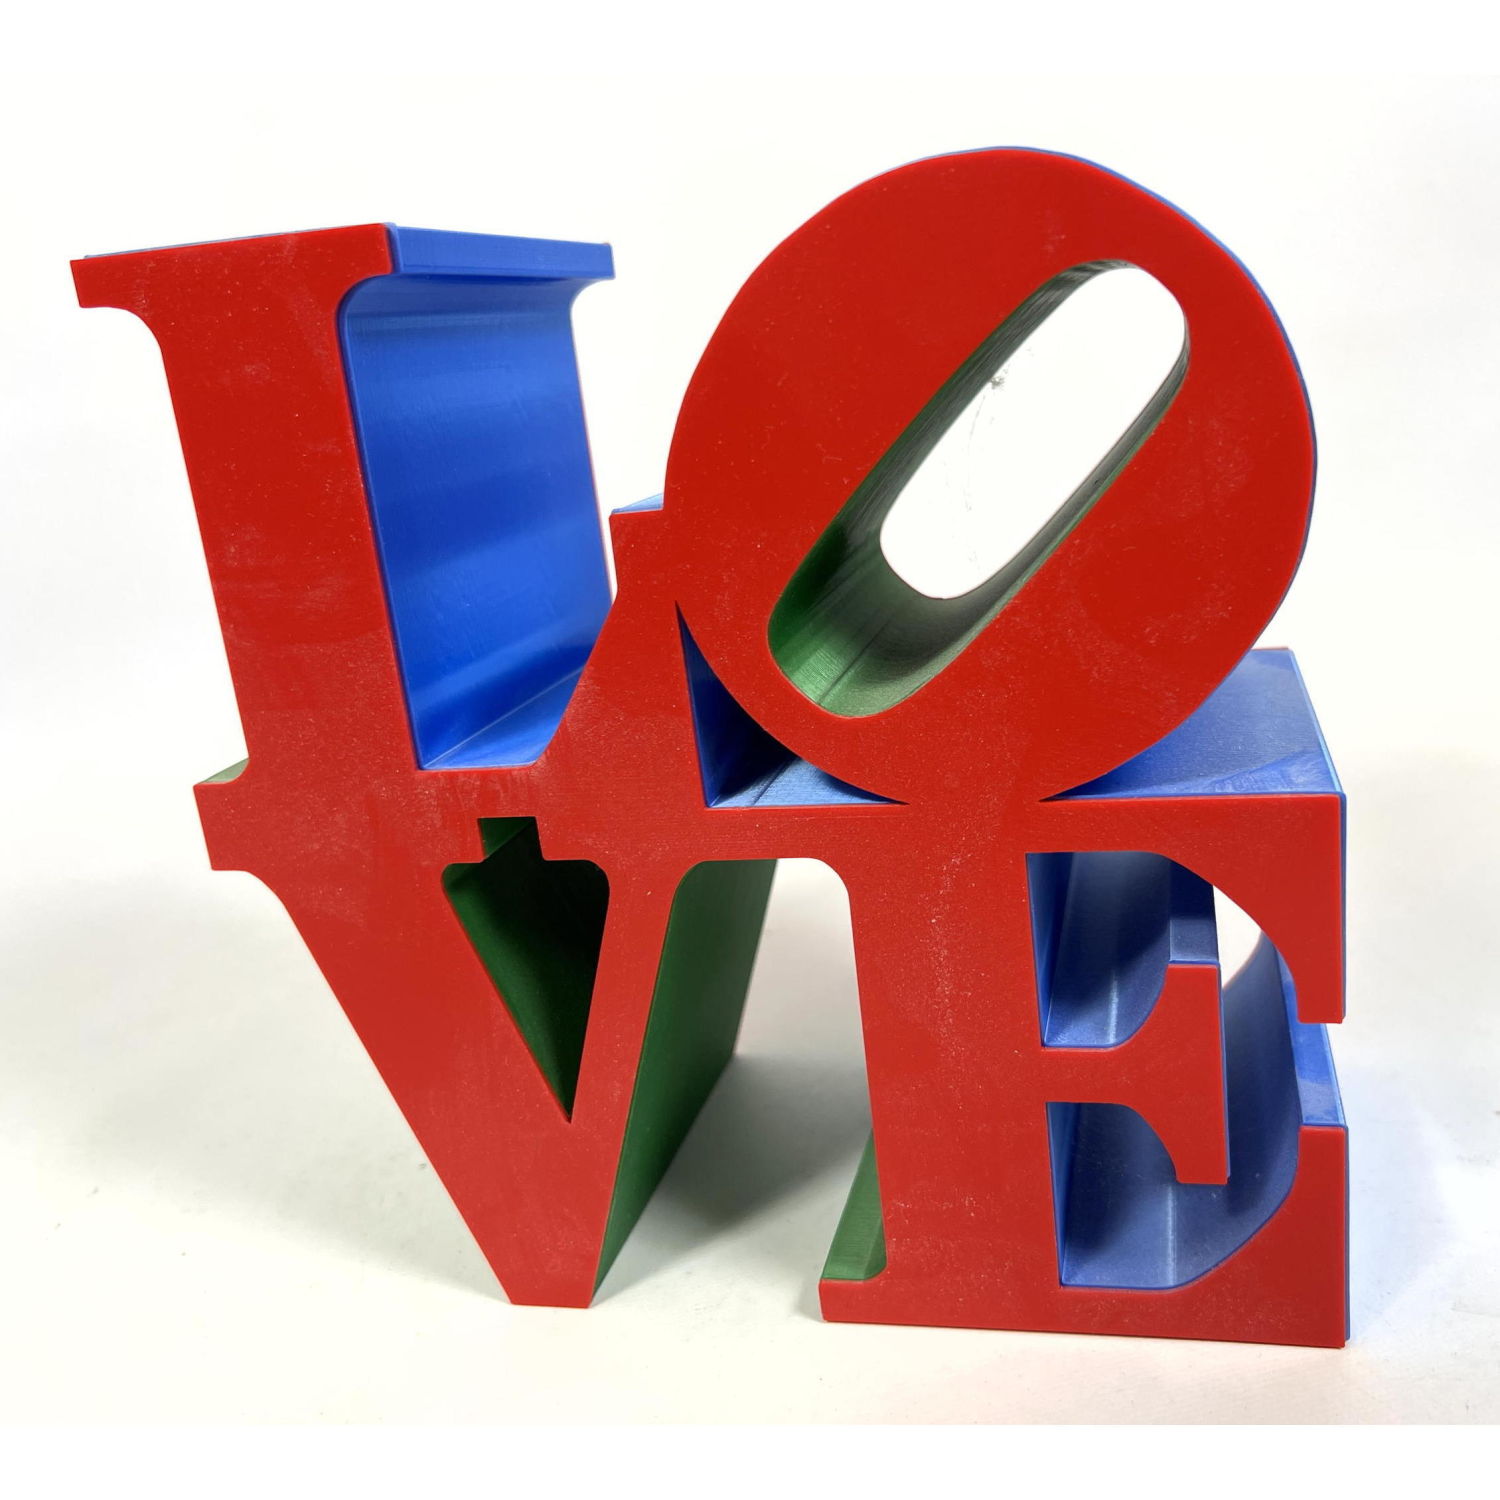 Love Sculpture after Robert Indiana  2ff110